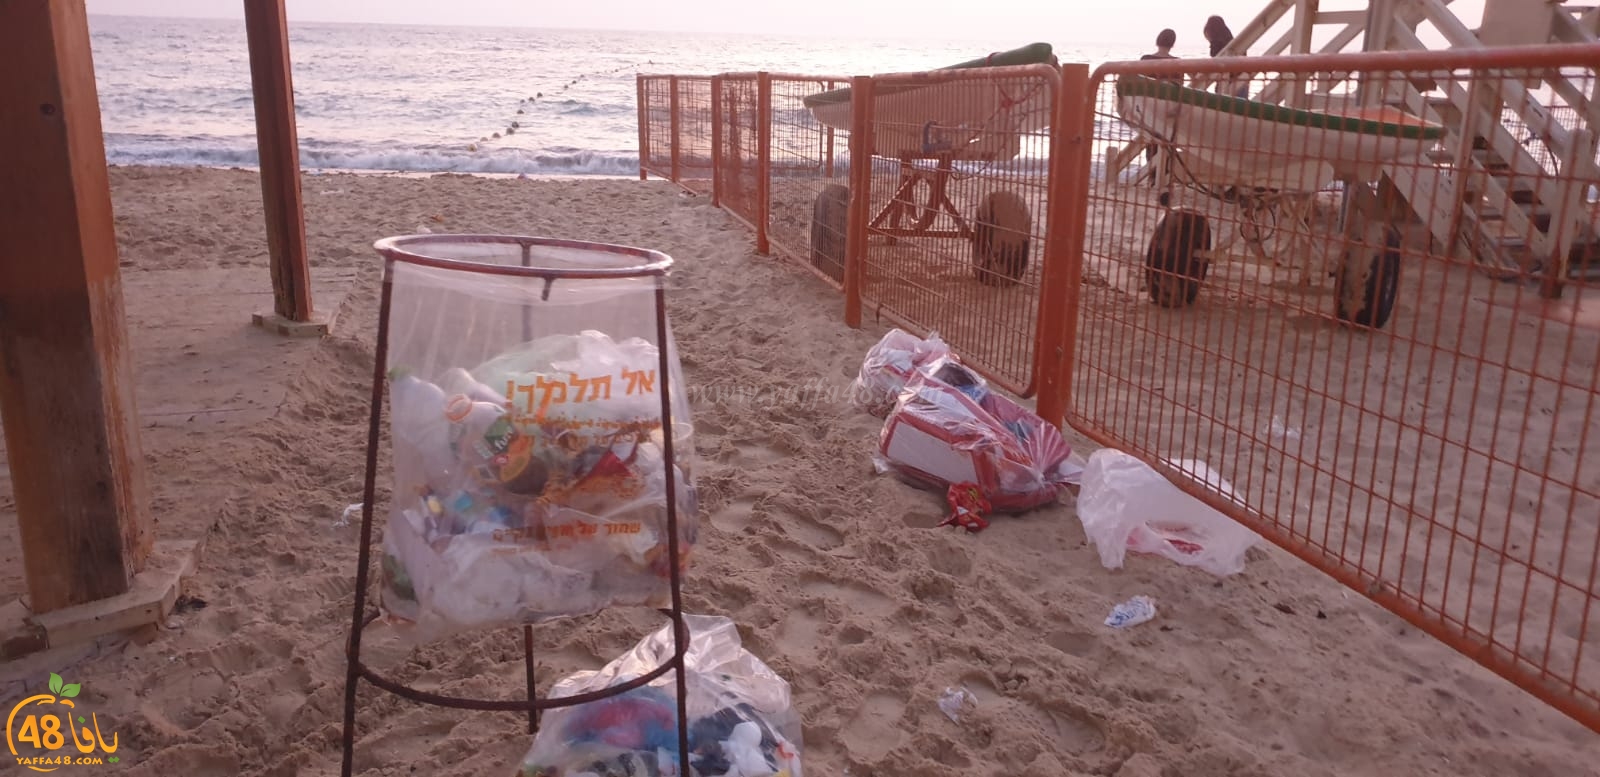 يافا: من المسؤول عن مشاهد تكدّس القمامة والنفايات على شواطئ المدينة ؟!